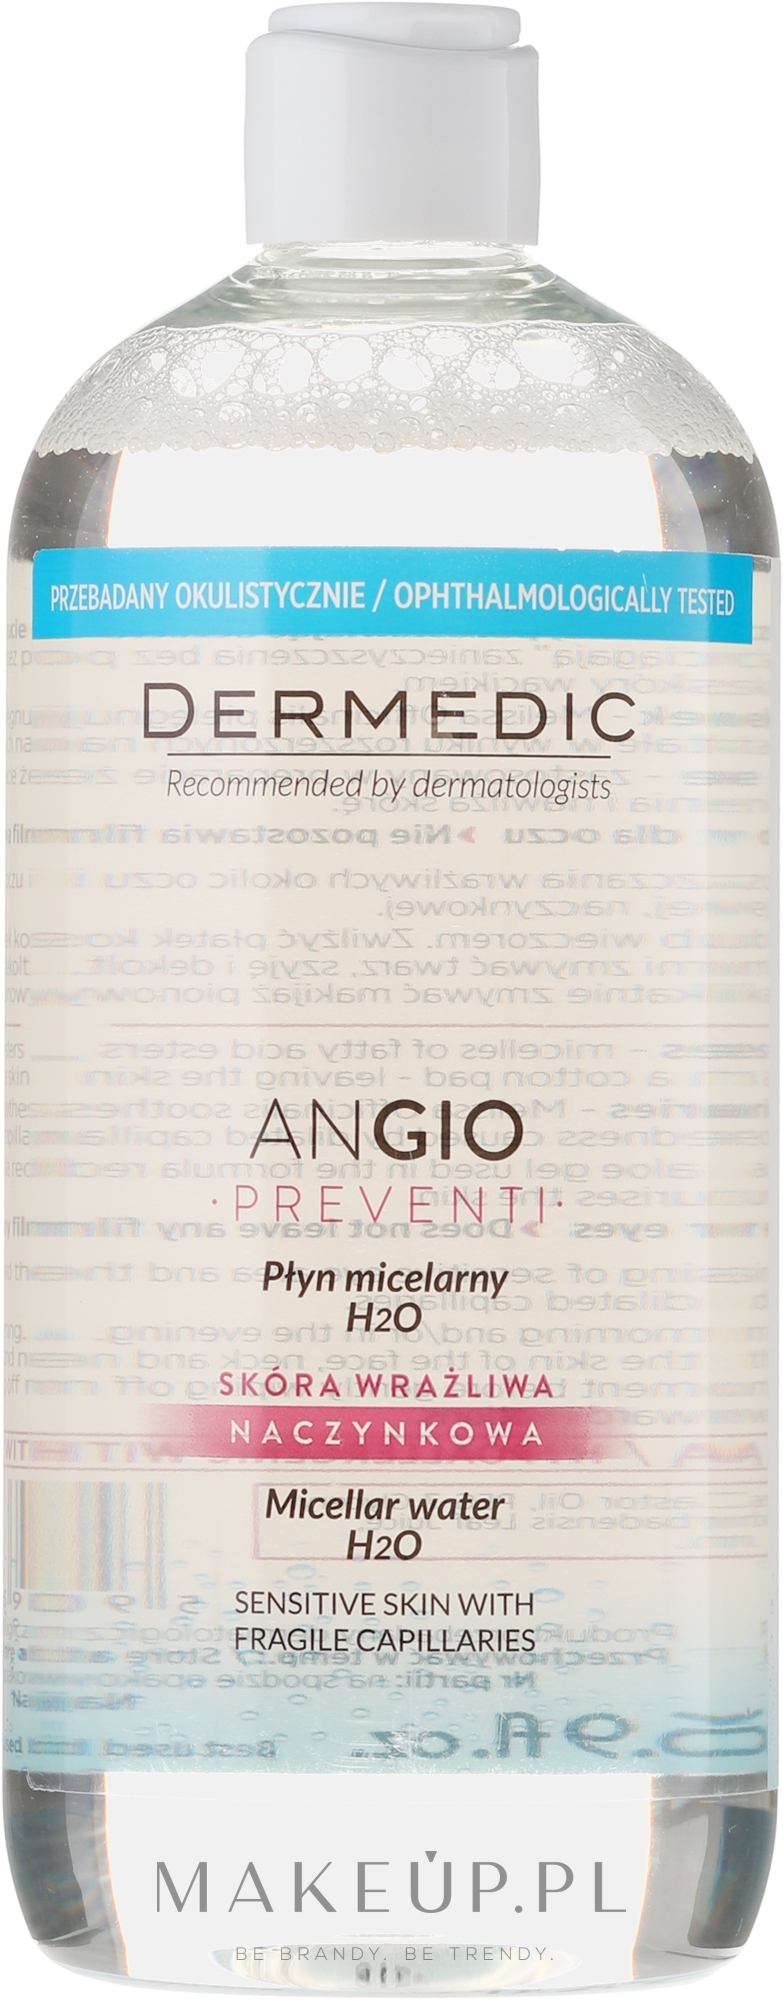 Płyn micelarny H2O do cery wrażliwej i naczynkowej - Dermedic Angio Preventi — Zdjęcie 500 ml